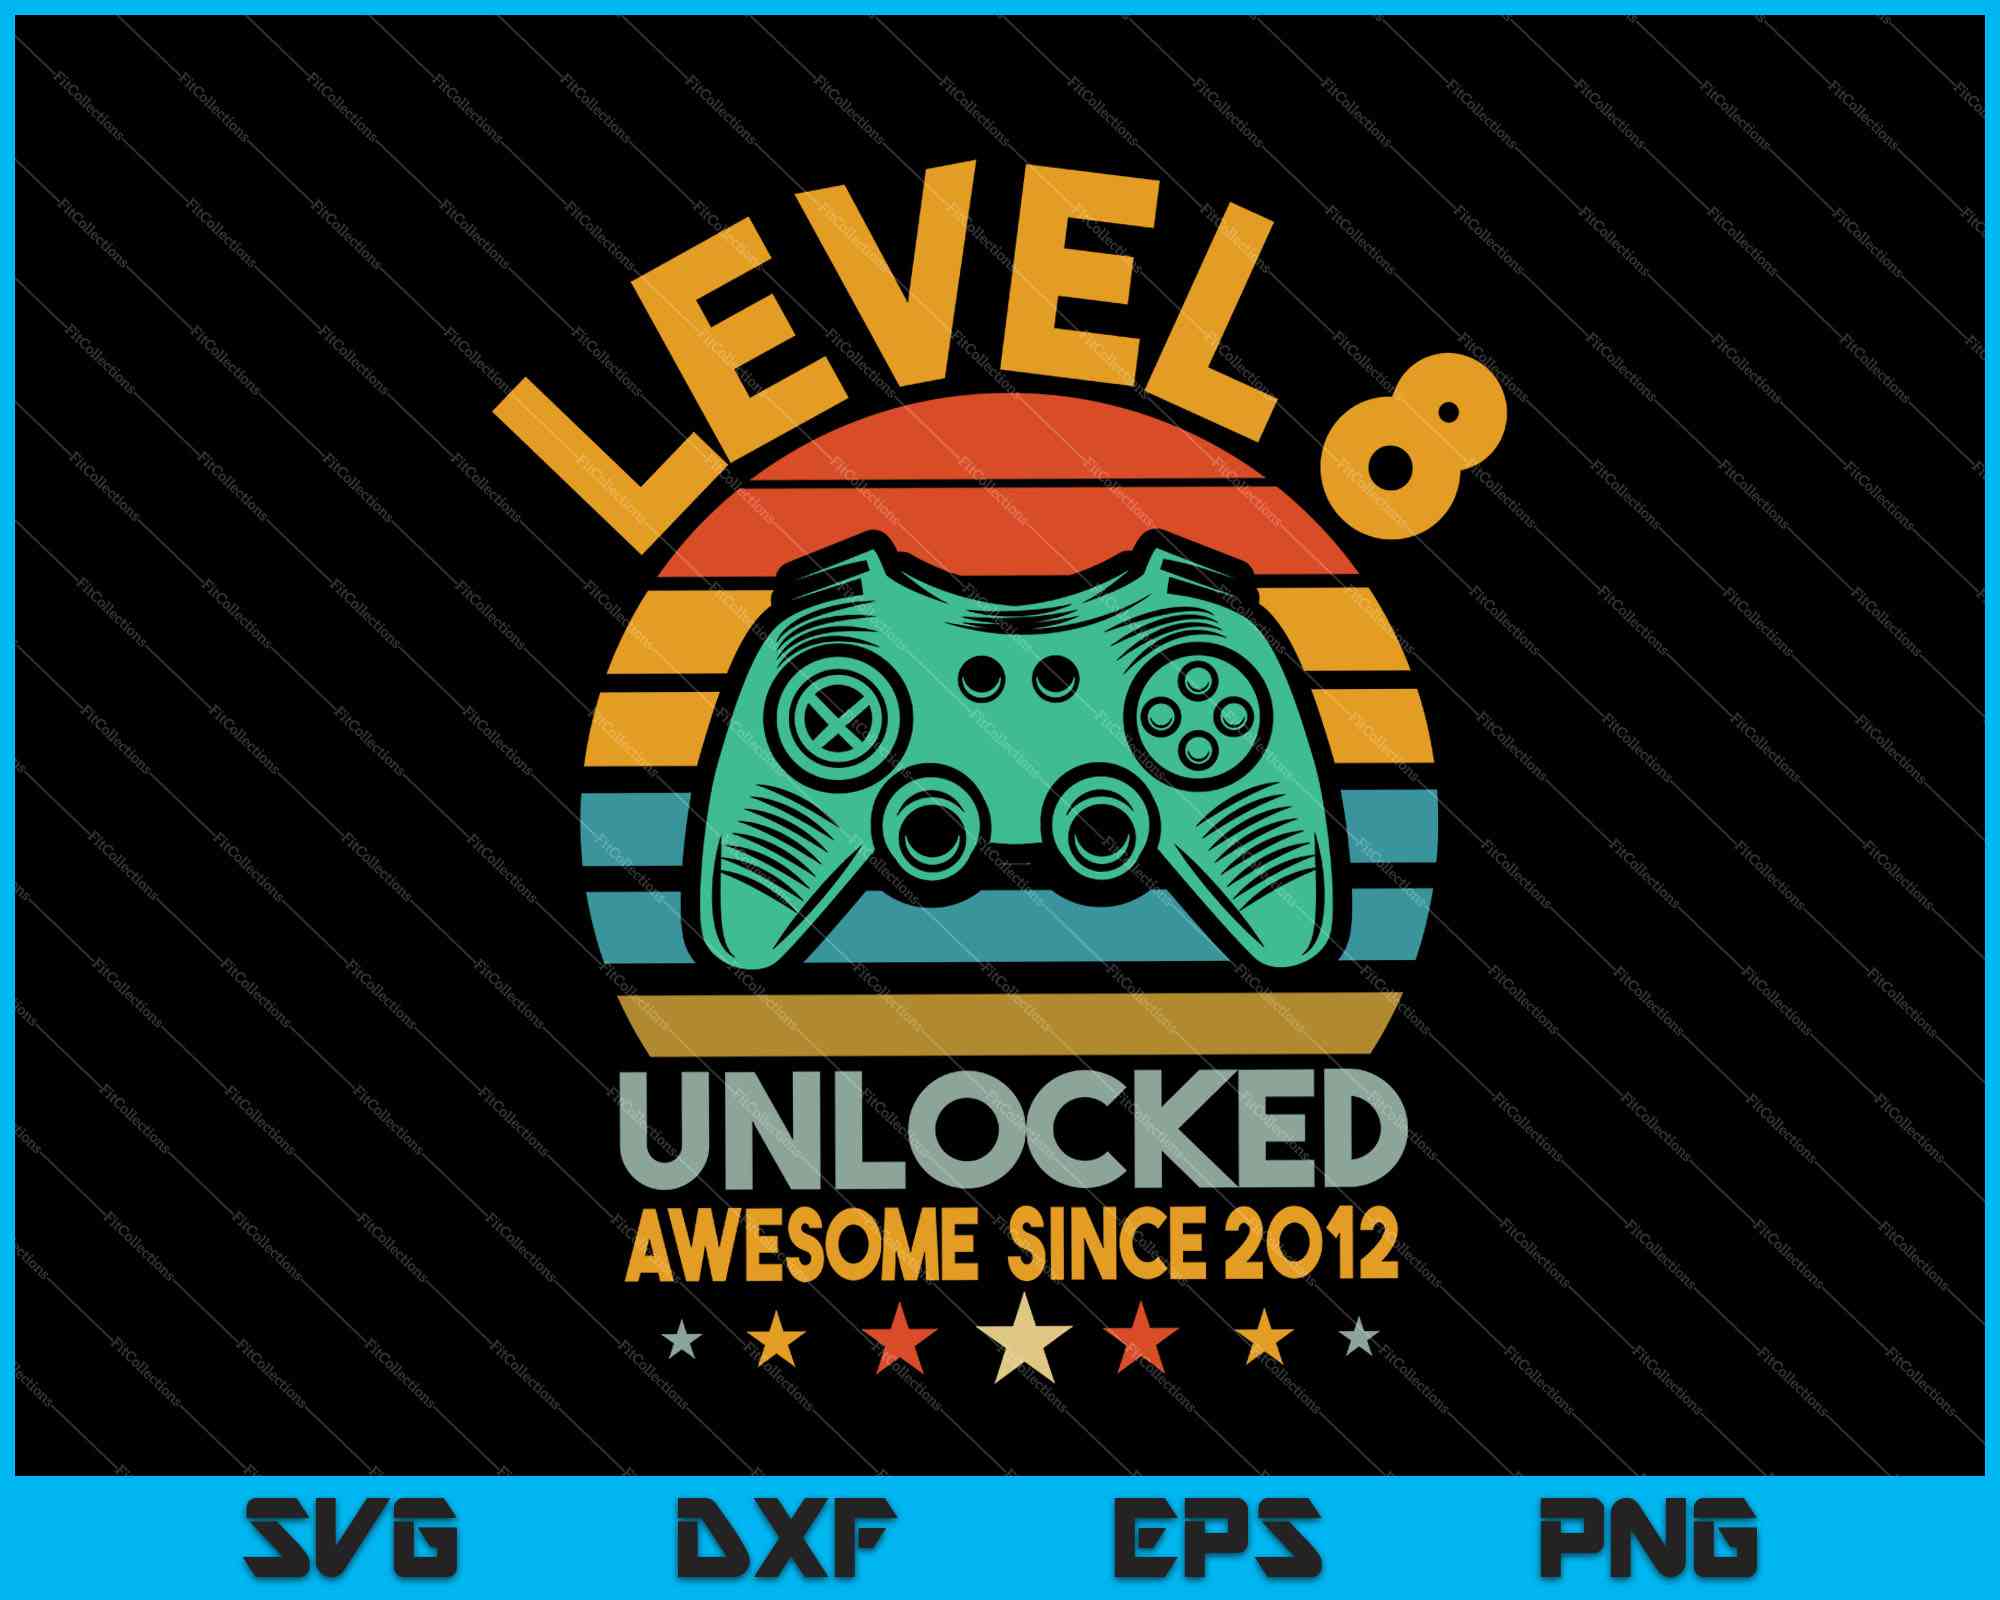 Birthday Celebration Level 8 Unlocked, VideoGame' Sticker